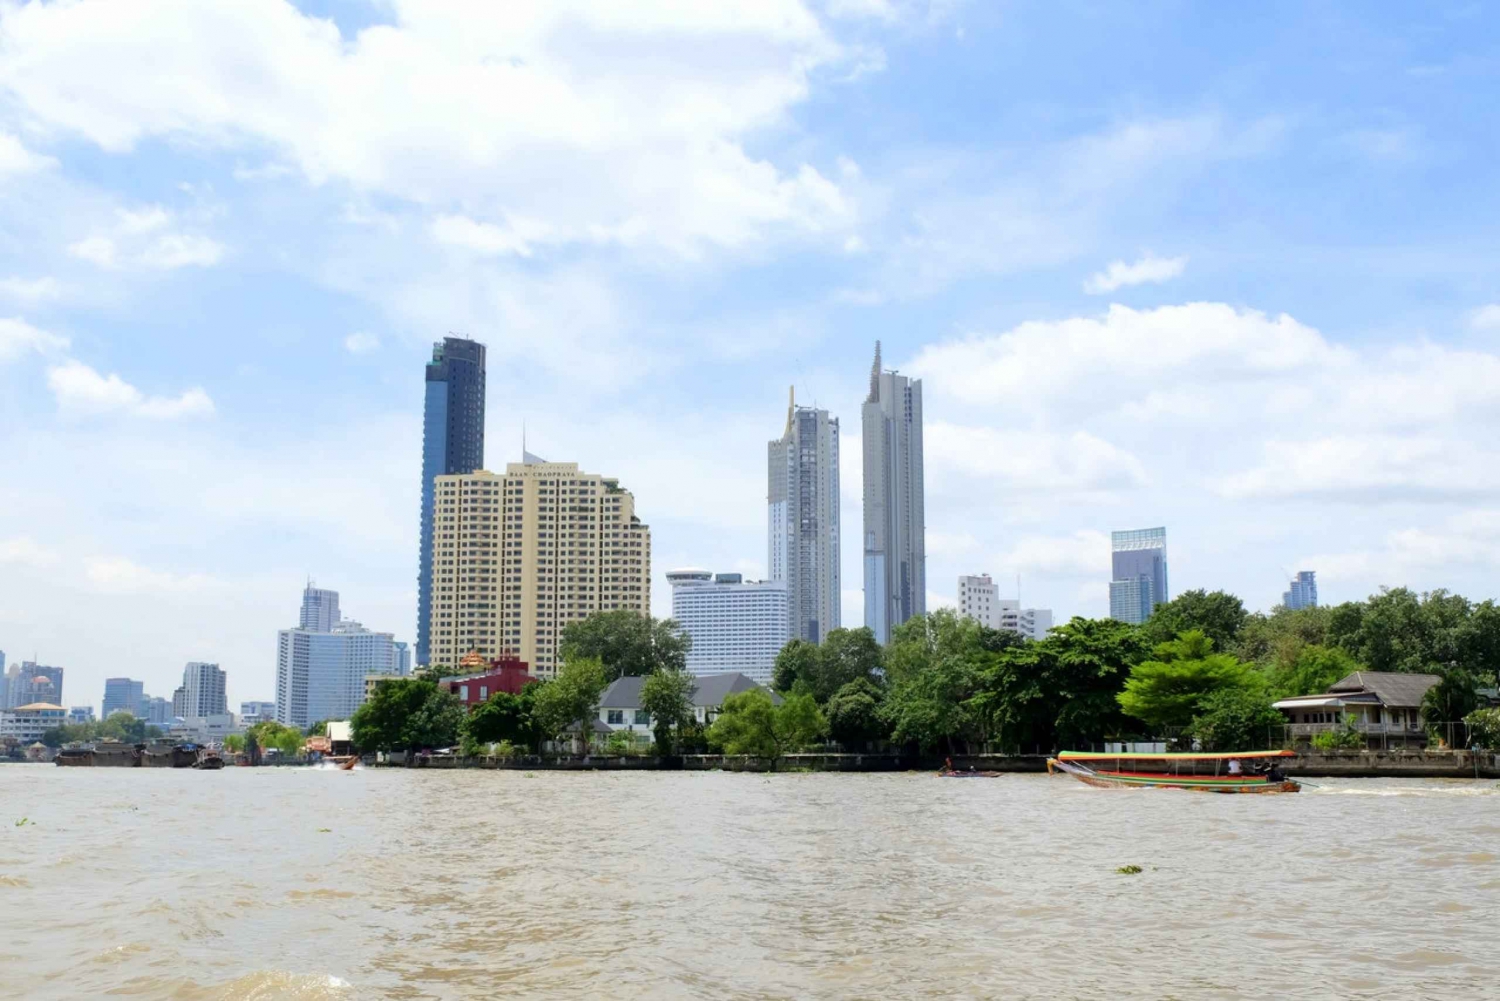 Canali di Bangkok: un nuovo punto di vista sulla città